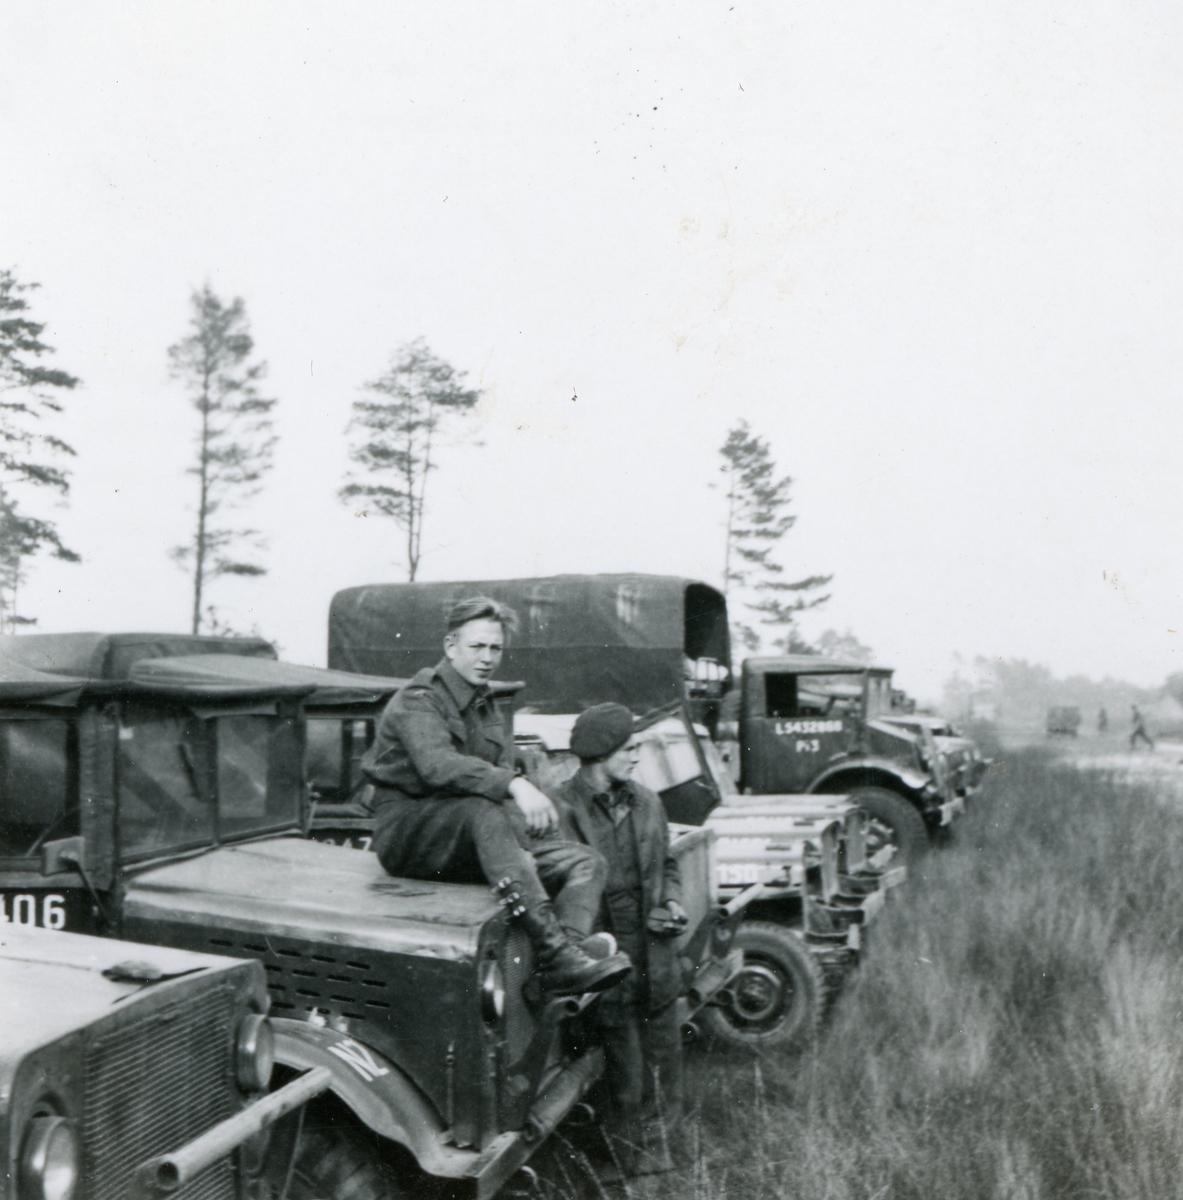 Teltleir i Tysklandsbrigaden 1948-49. 
Kristoffer Rust var der.
Nærmeste 2-3 er Bedford MW, 2 Jeep, en kanadisk Ford eller Chevrolet lastebil.